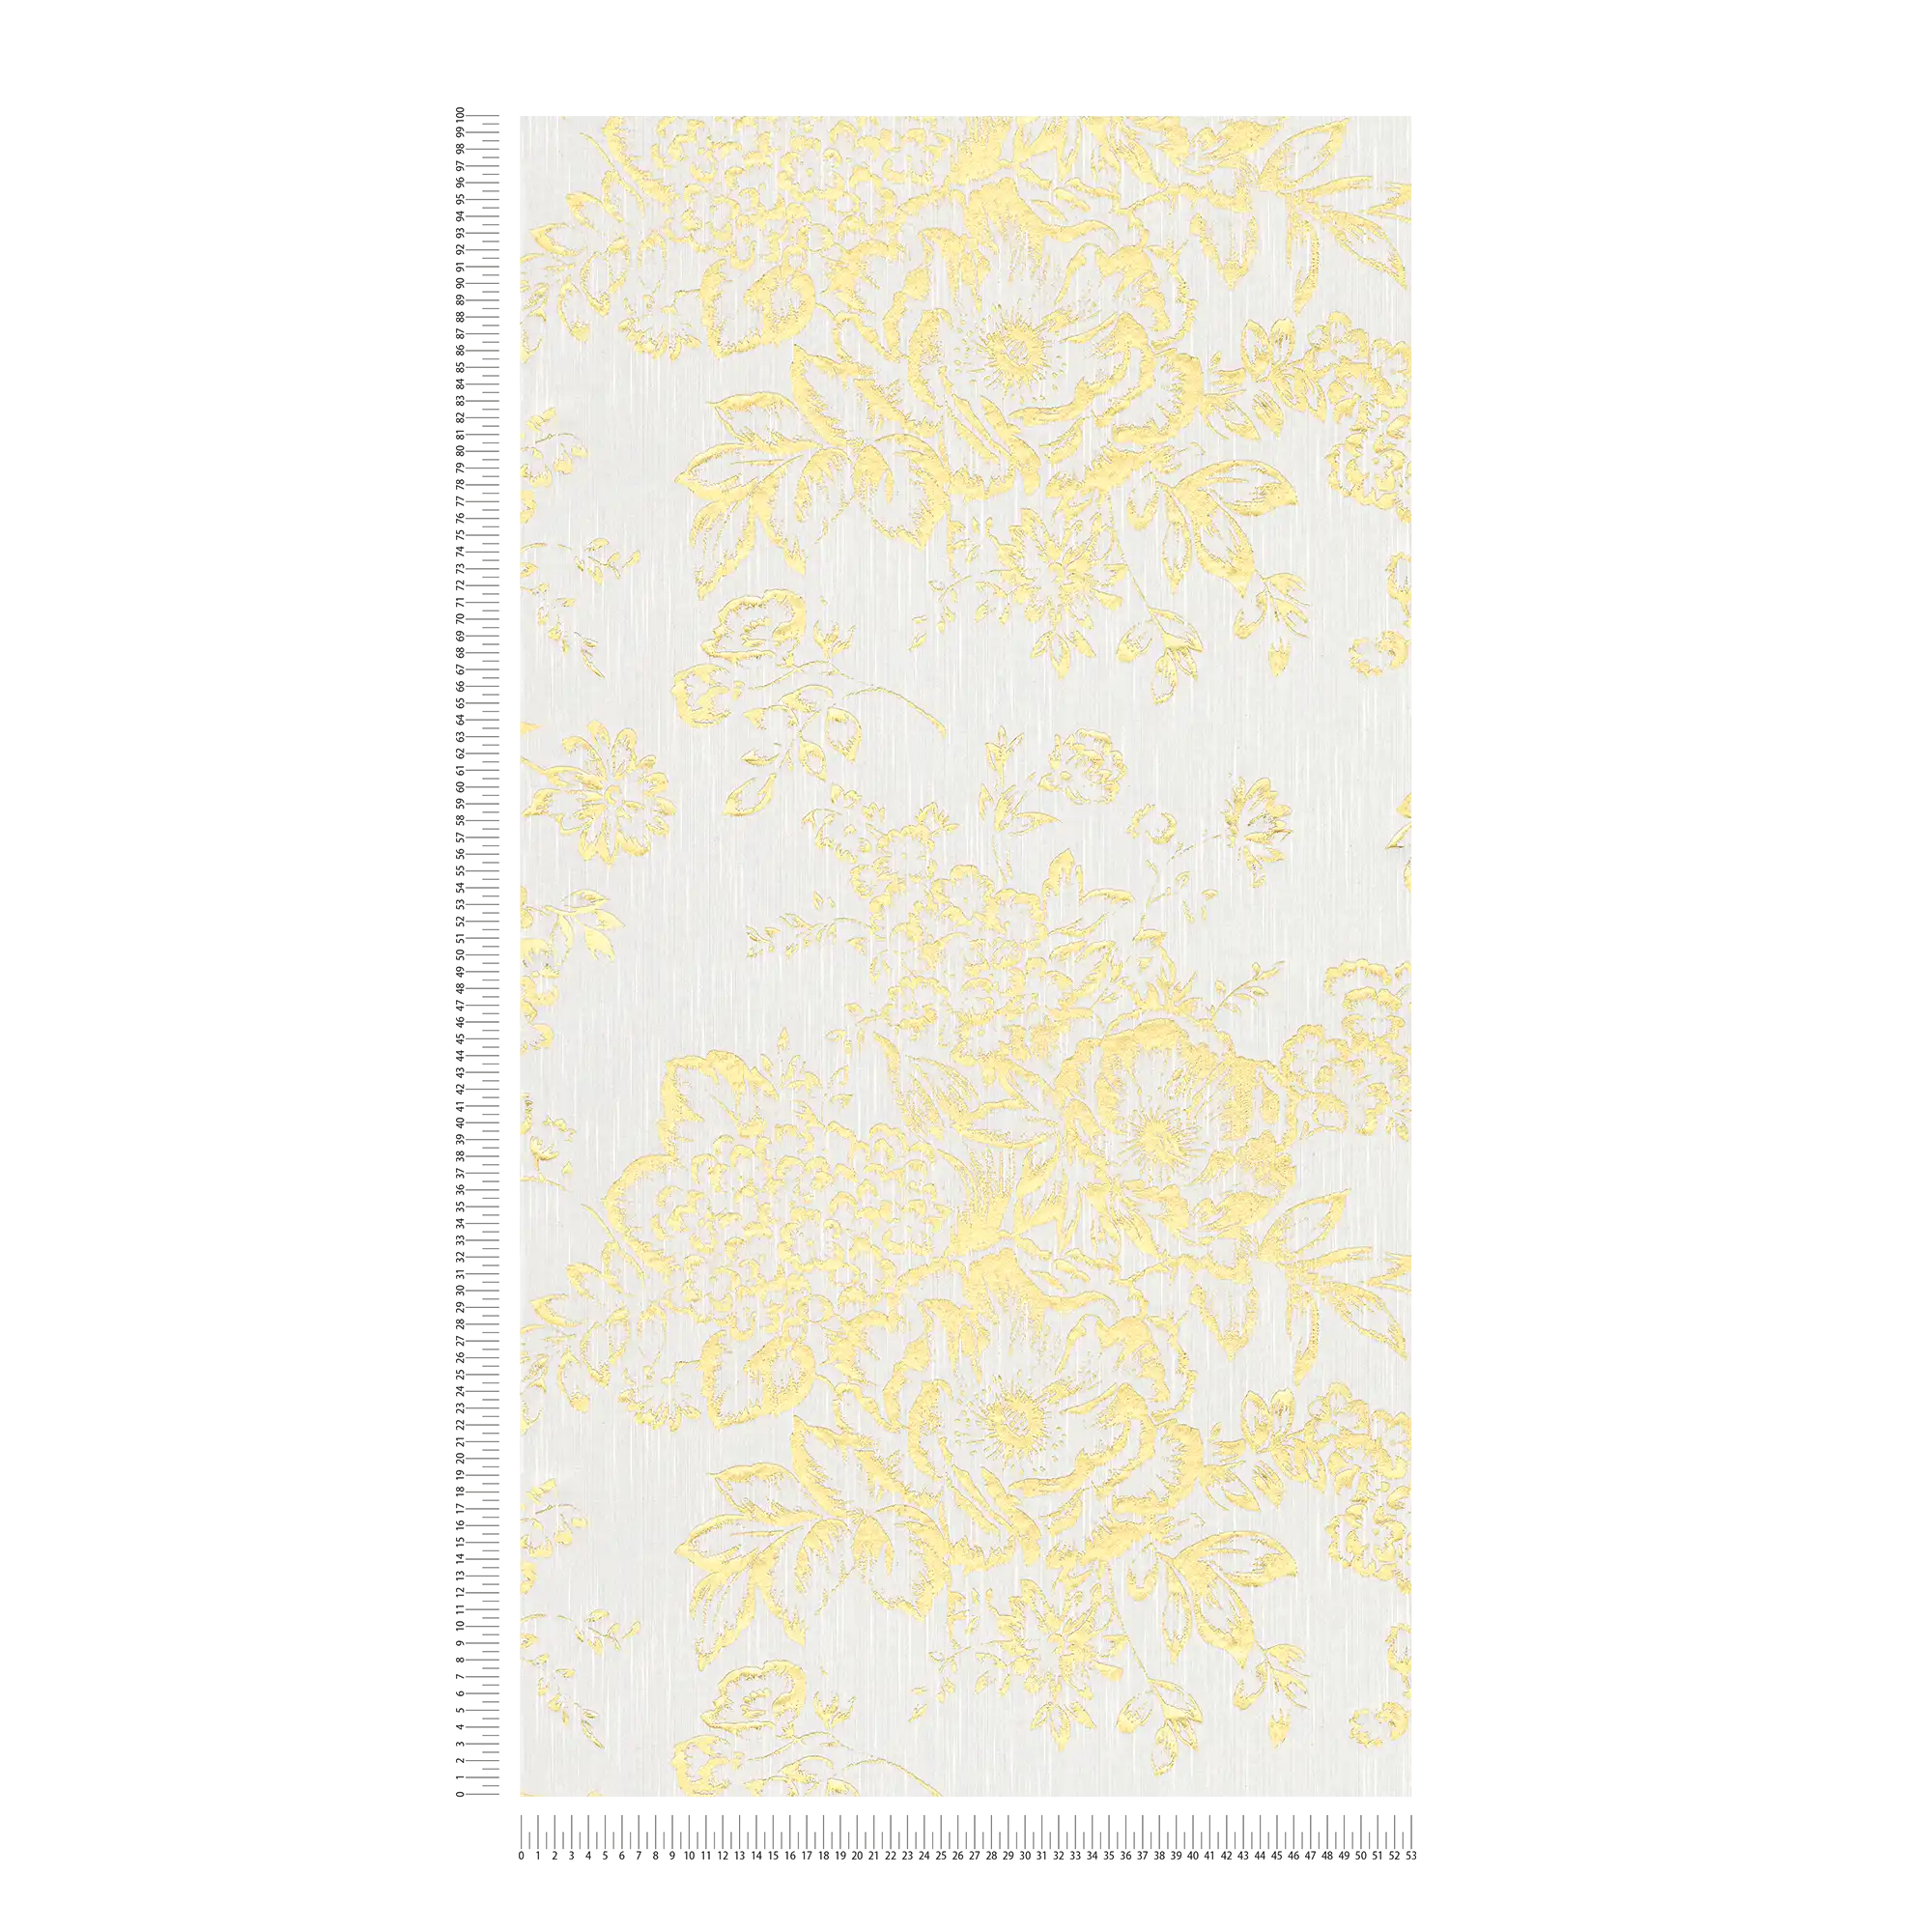             Carta da parati strutturata con motivi floreali dorati - oro, bianco
        